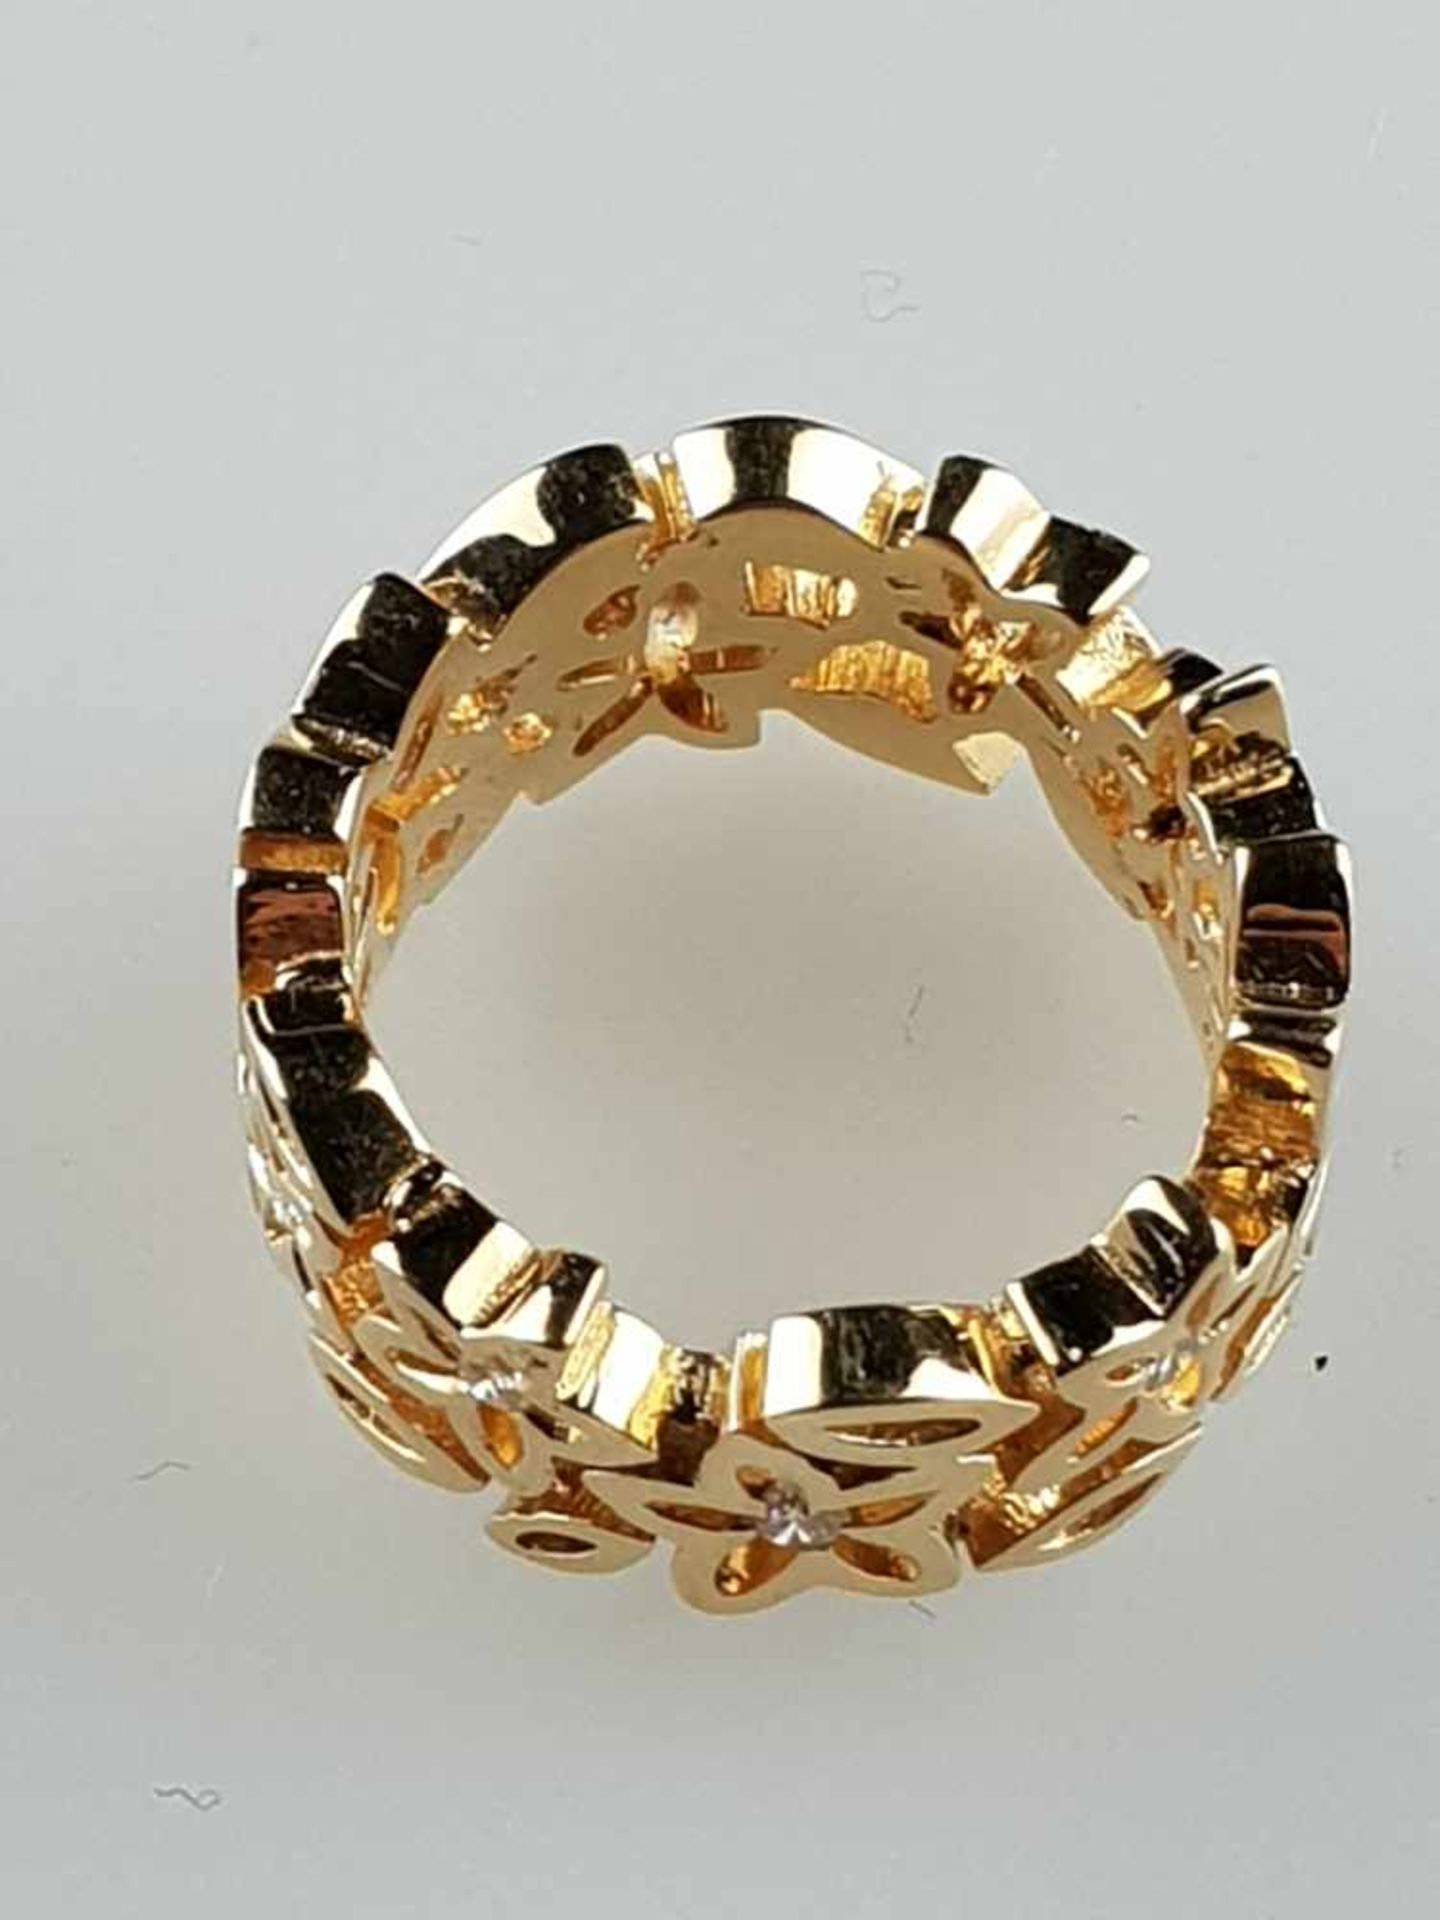 Bandring mit Diamanten - 18Kt.-Gelbgold 750, gitterdurchbrochener Reif mit 9 kleinen, in Blüten - Bild 3 aus 4